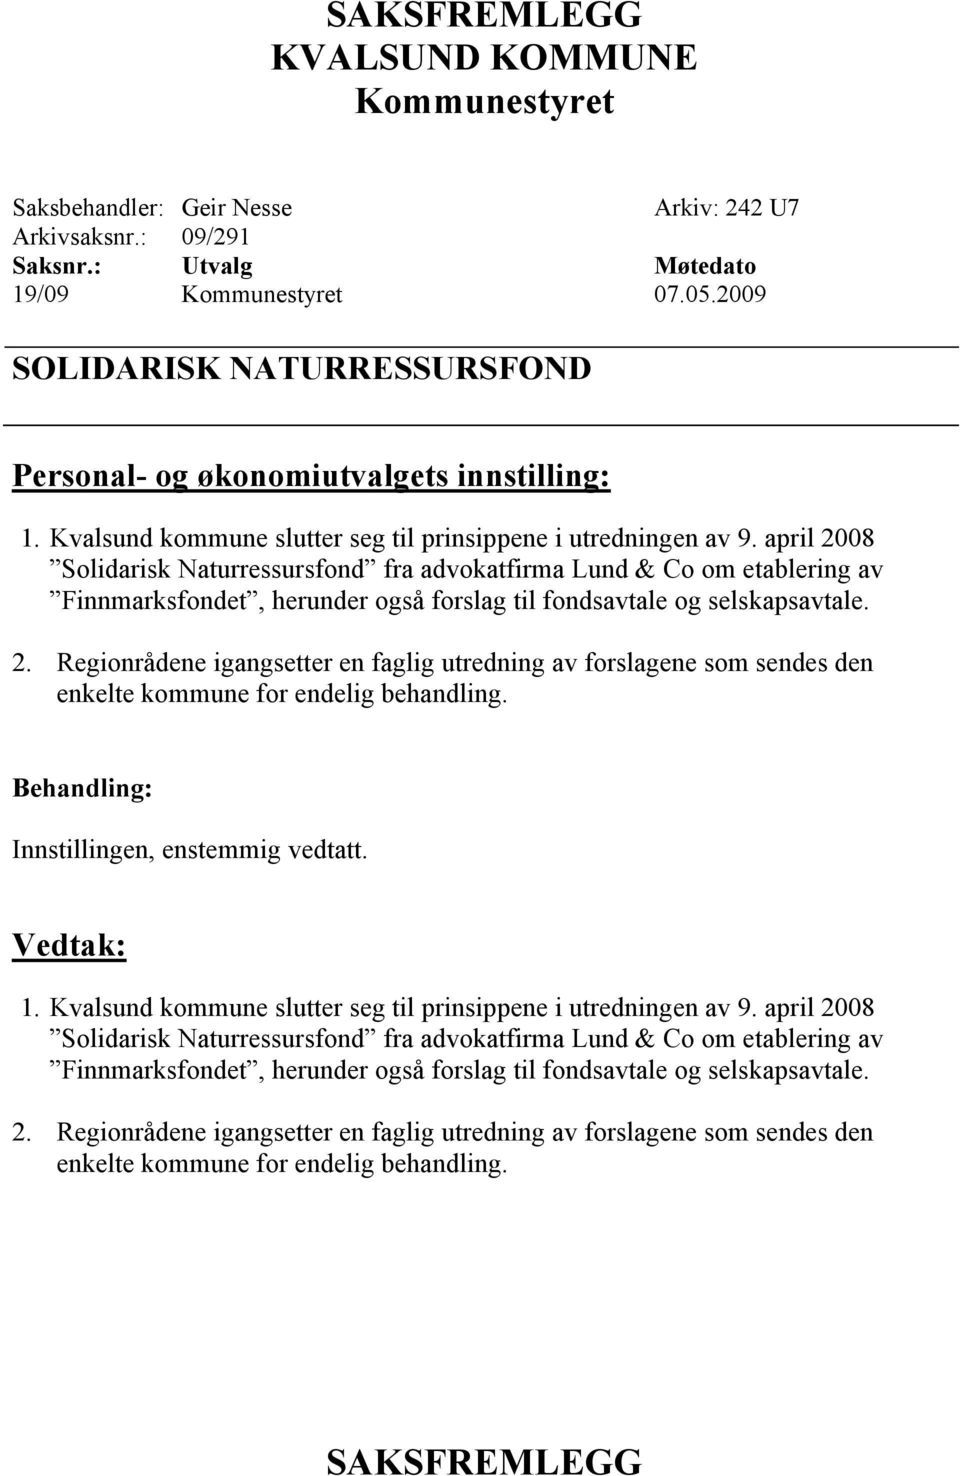 april 2008 Solidarisk Naturressursfond fra advokatfirma Lund & Co om etablering av Finnmarksfondet, herunder også forslag til fondsavtale og selskapsavtale. 2. Regionrådene igangsetter en faglig utredning av forslagene som sendes den enkelte kommune for endelig behandling.